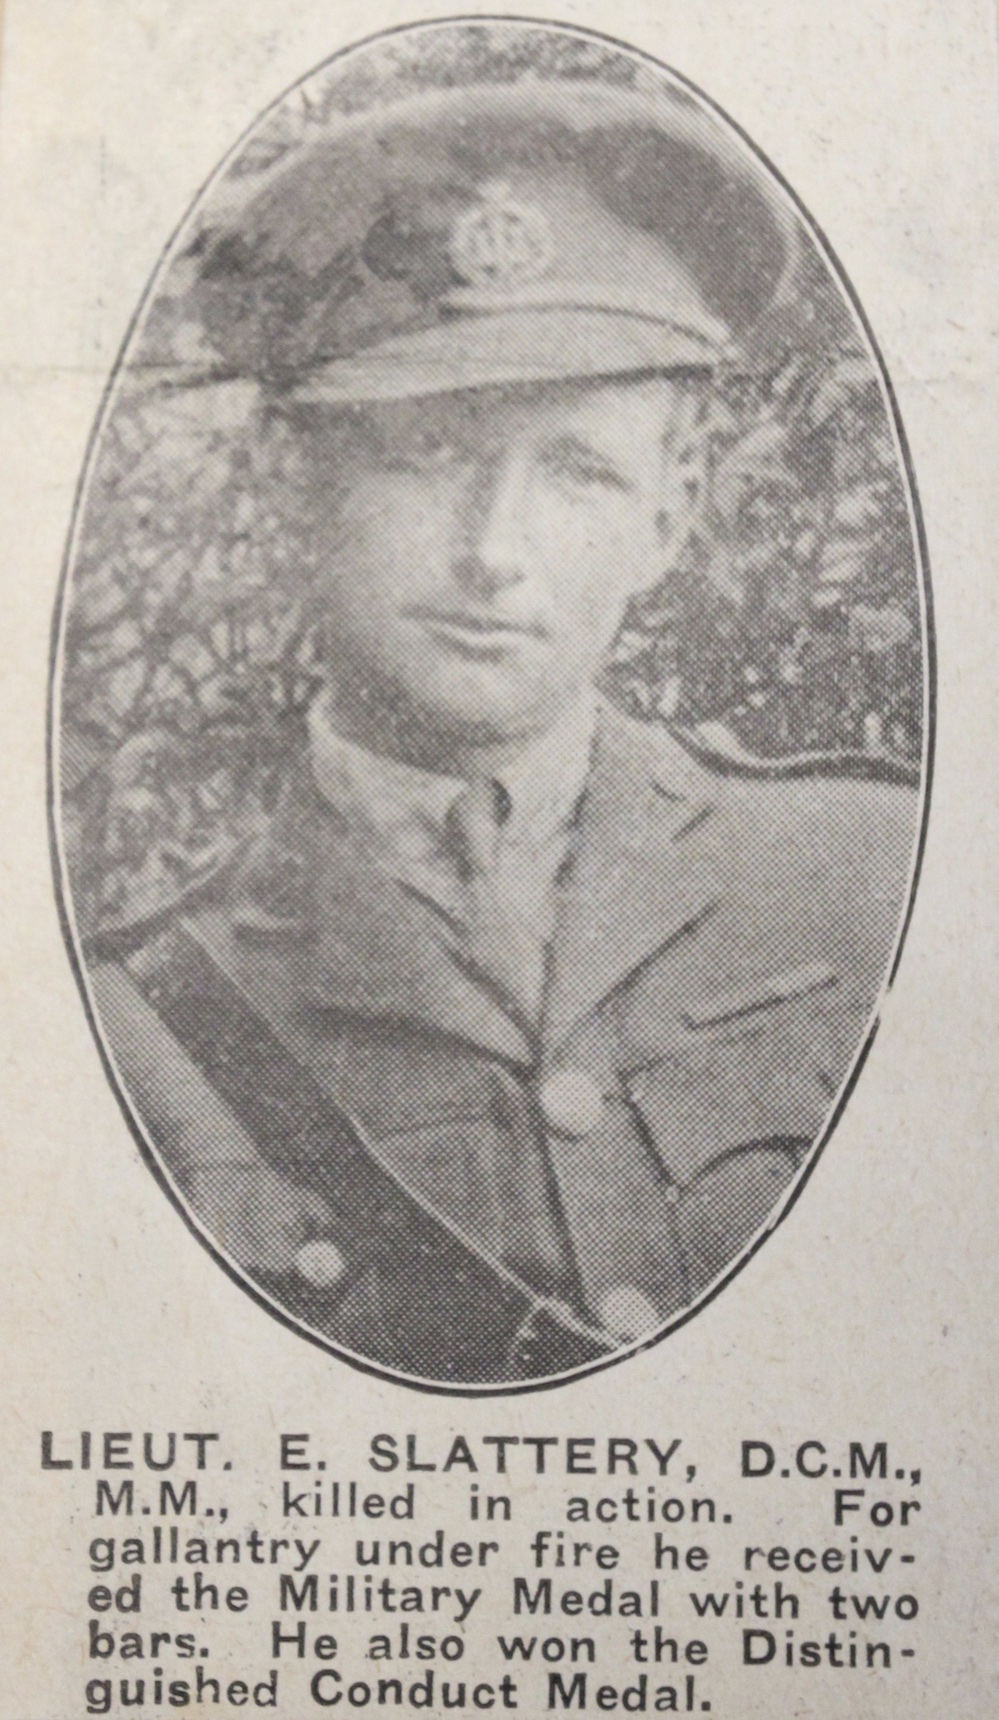 Lieutenant Edward Slattery in the Great War